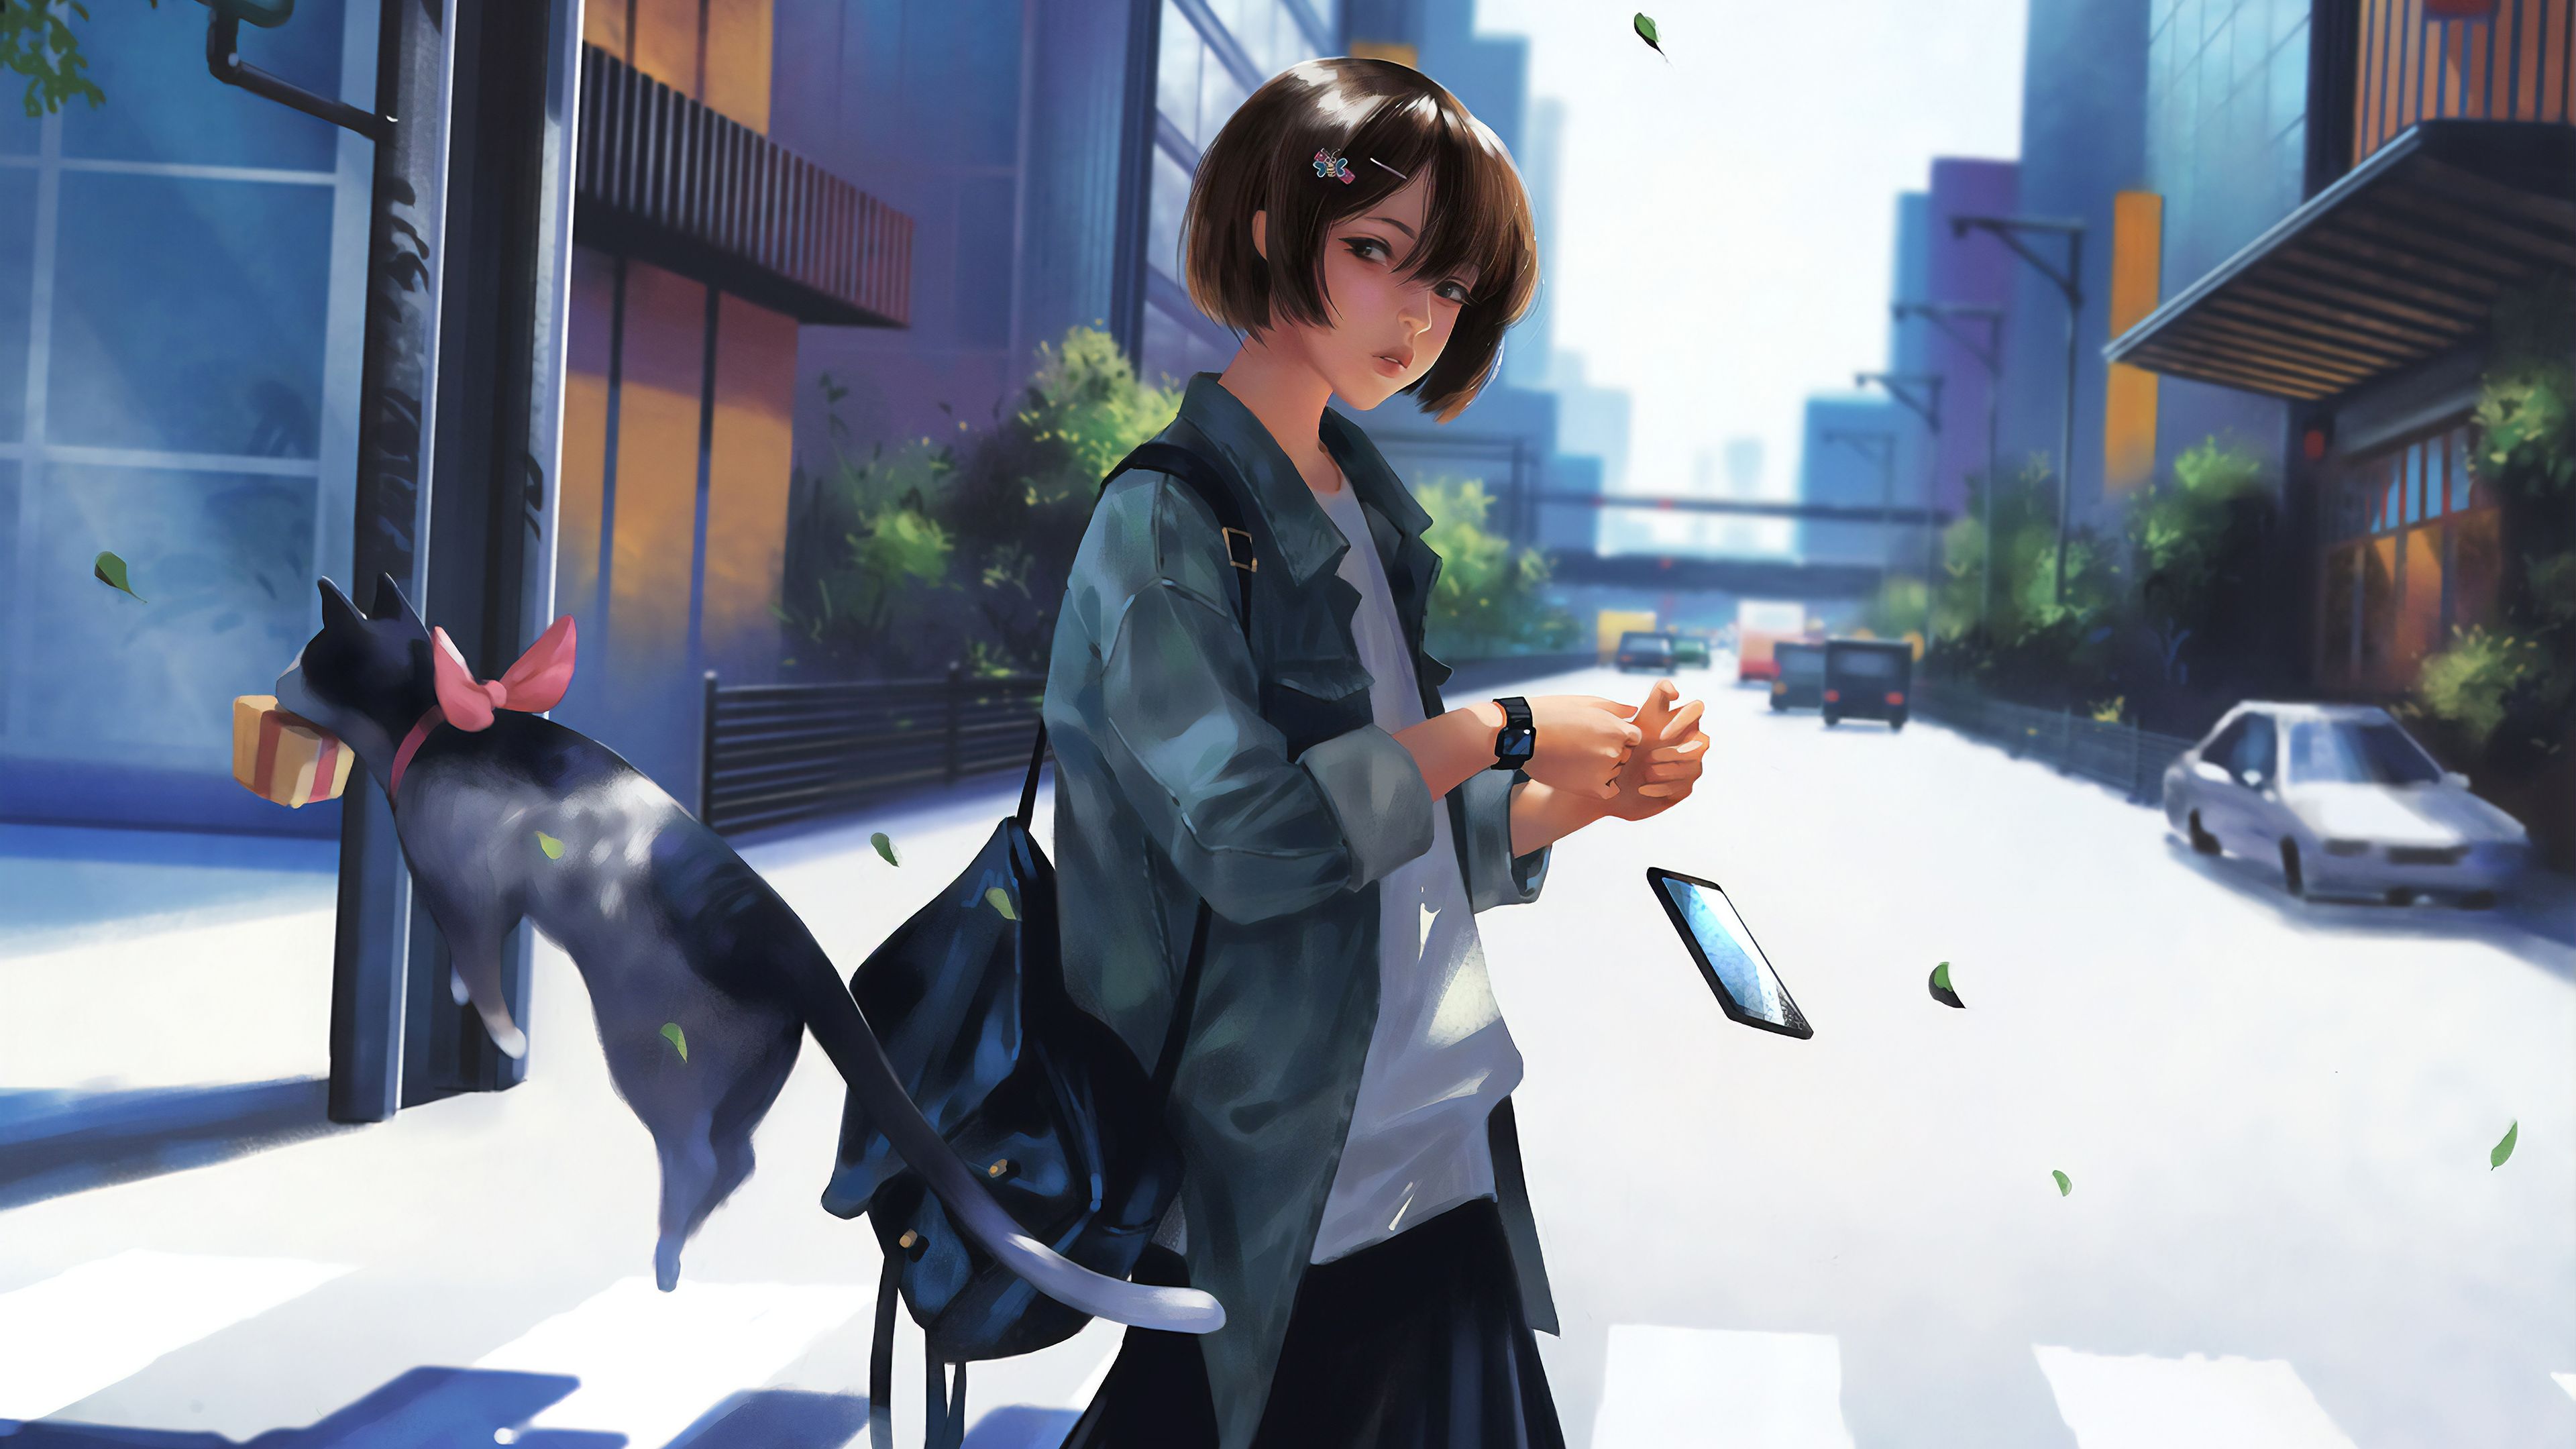 Wallpaper : anime girls, digital art, artwork, 2D, portrait